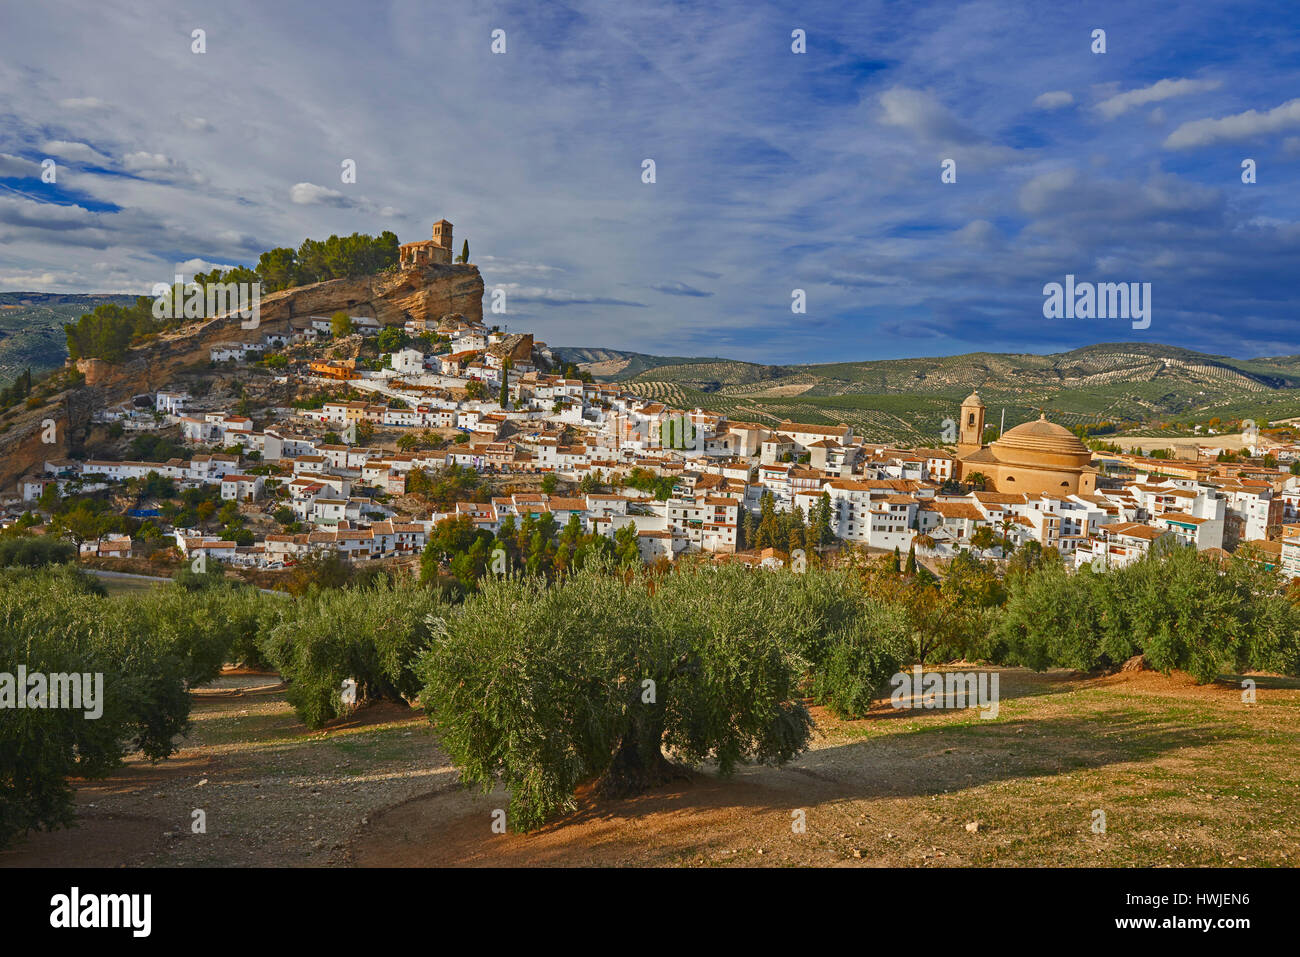 Montefrio. Castello moresco, Washington Irving percorso, provincia di Granada, Andalusia, Spagna. Foto Stock